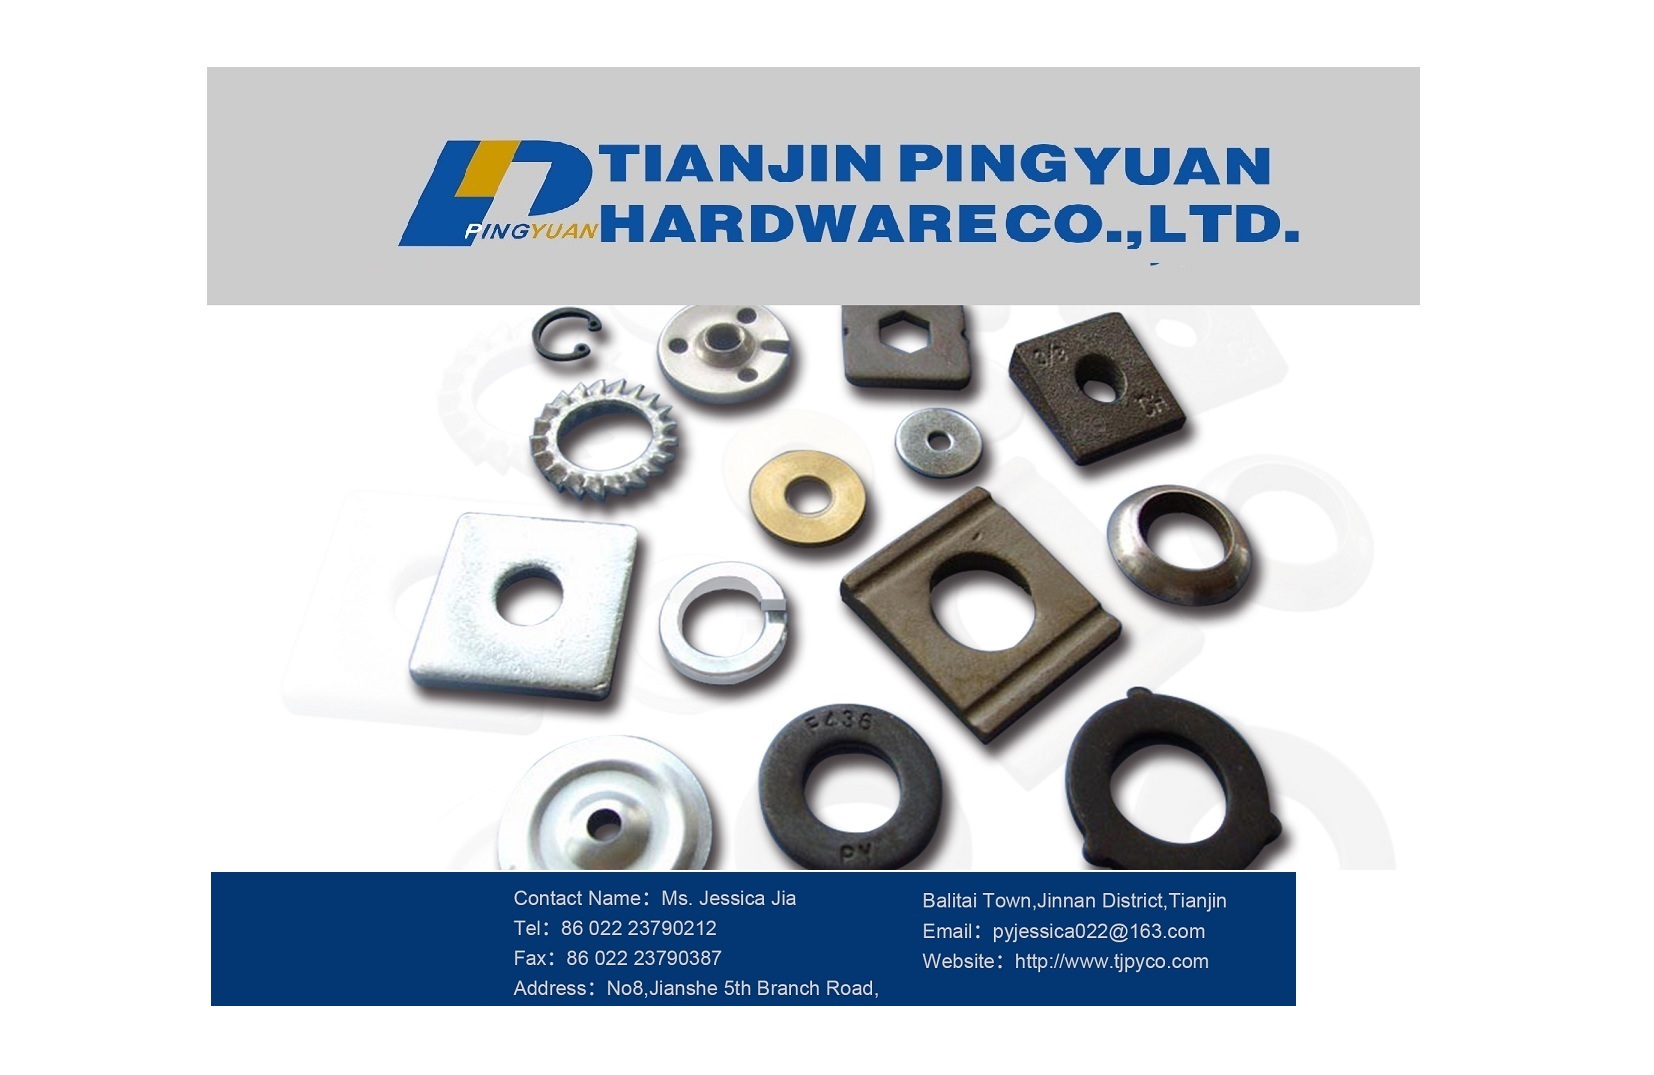 Tianjin Pingyuan Hardware Co., Ltd.